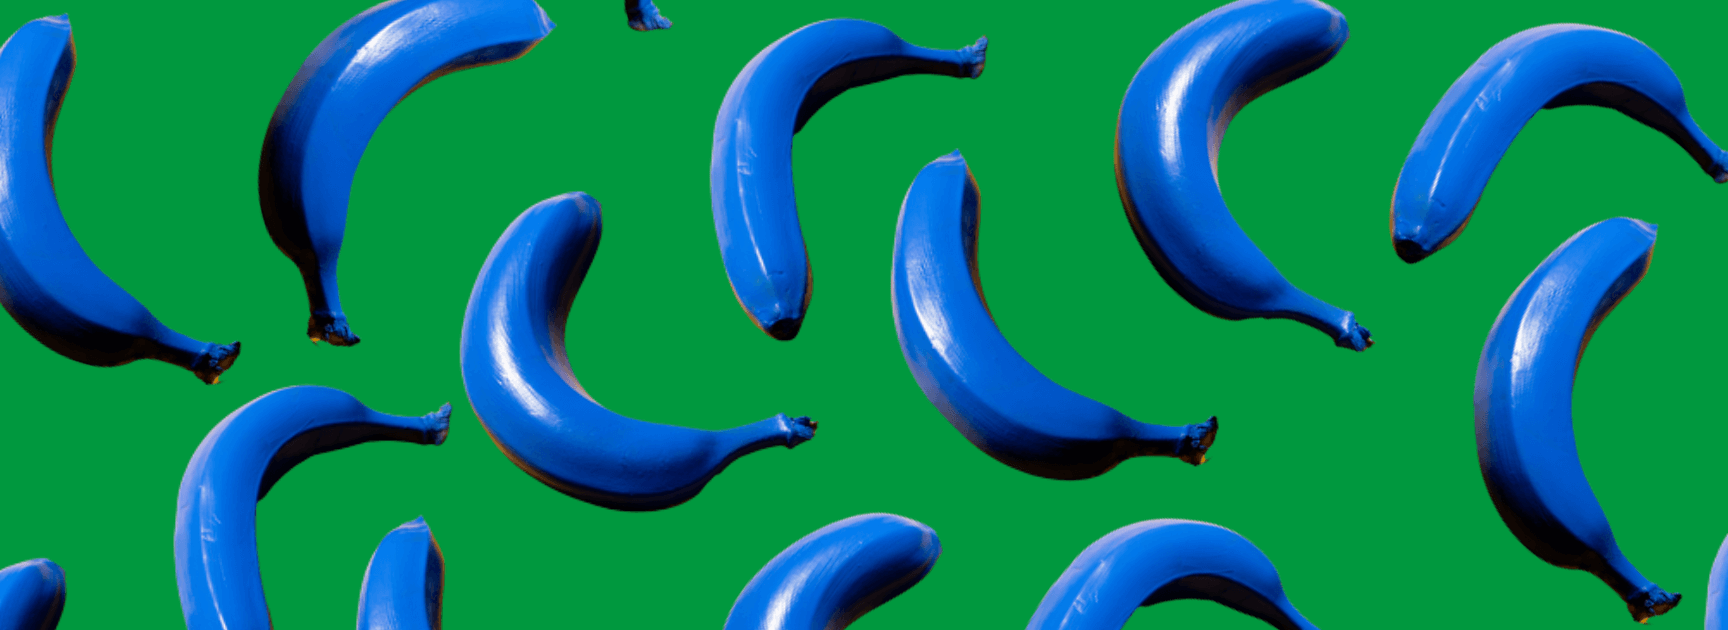 Mehrere blaue Bananen freigestellt auf grünem Hintergrund